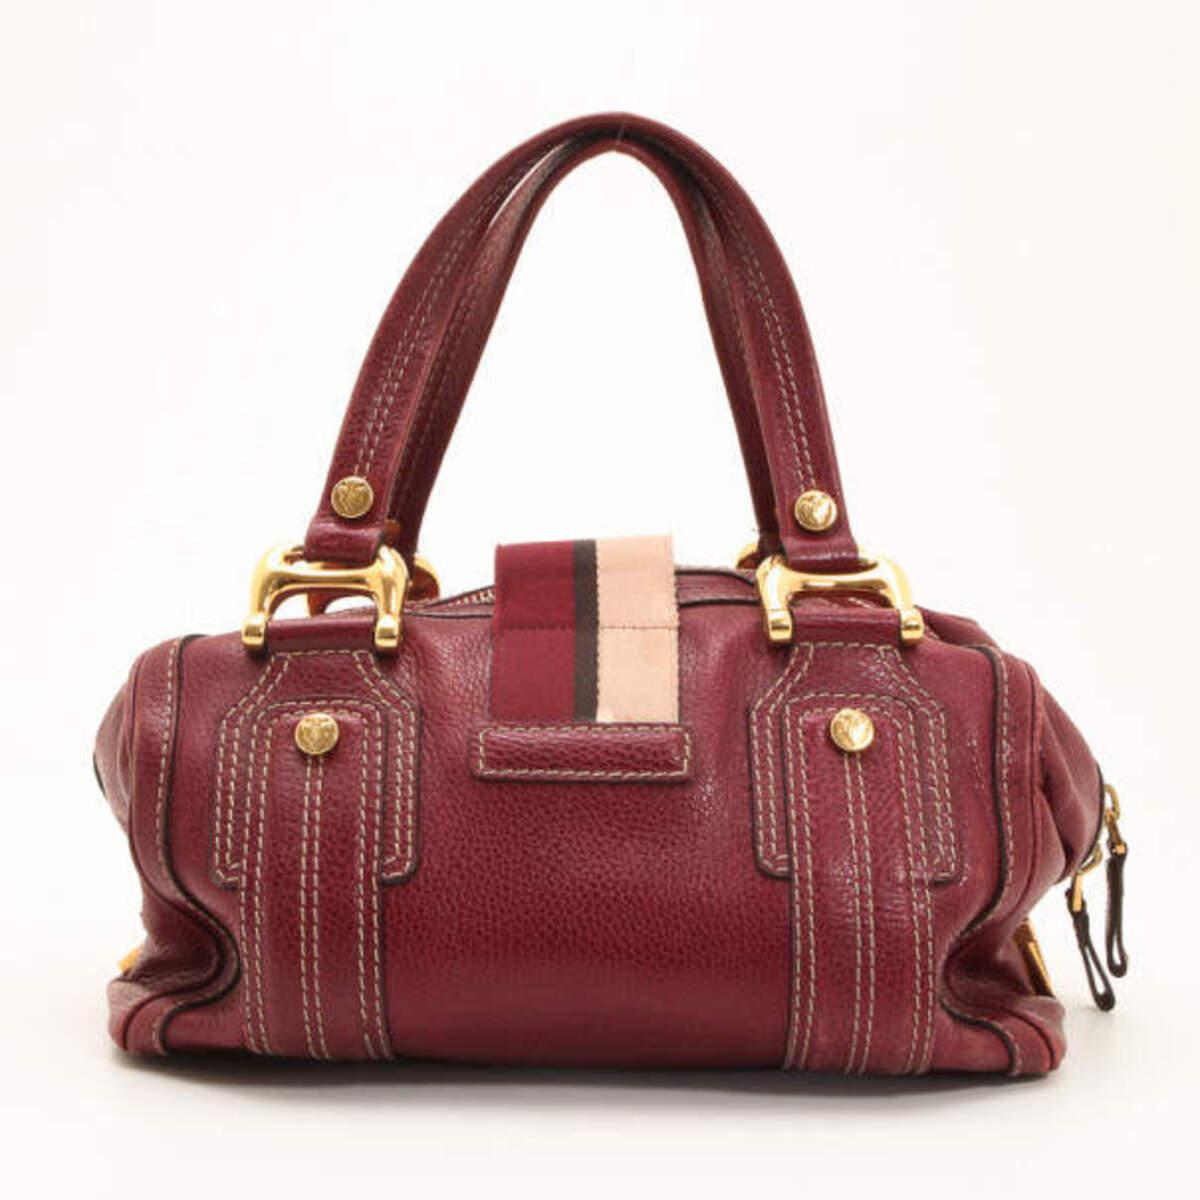 Les détails emblématiques de l'Icone de Gucci en font un sac à main Gucci intéressant et incontournable. Cette sacoche associe un cuir grainé marron souple à la bordure rayée rouge et rose classique de Gucci. L'extérieur de l'Aviatrix est doté de la